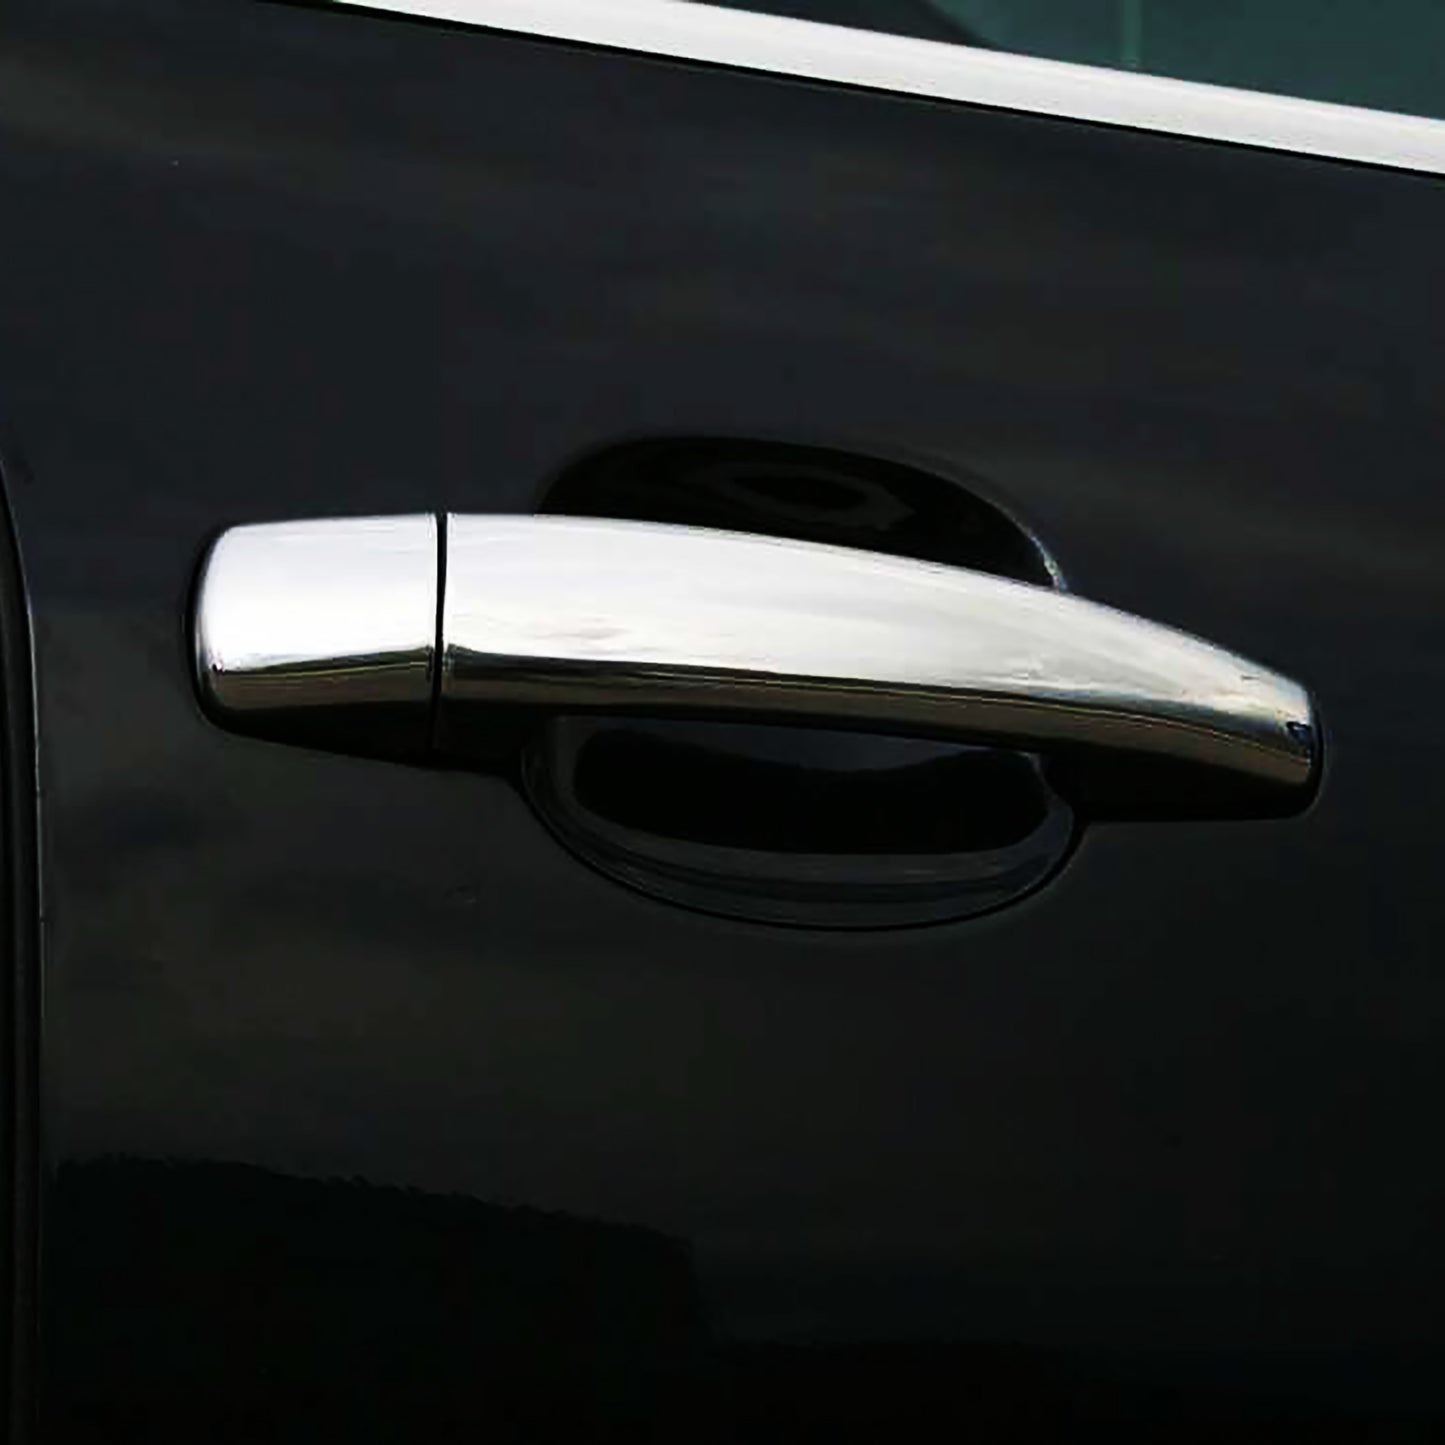 Peugeot 207 Kapı Kolu Aksesuarları Detaylı Resimleri, Kampanya bilgileri ve fiyatı - 1